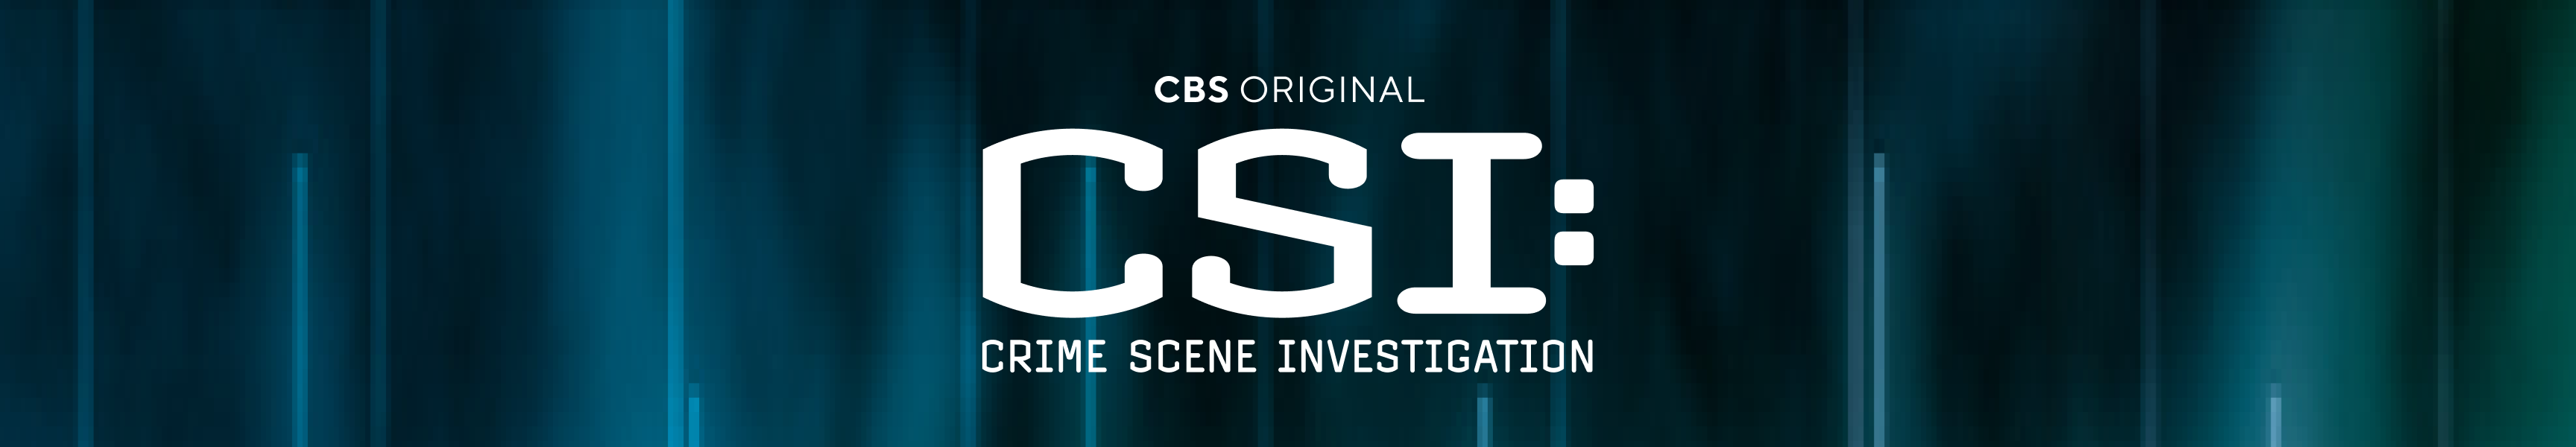 CSI: Investigación de la escena del crimen